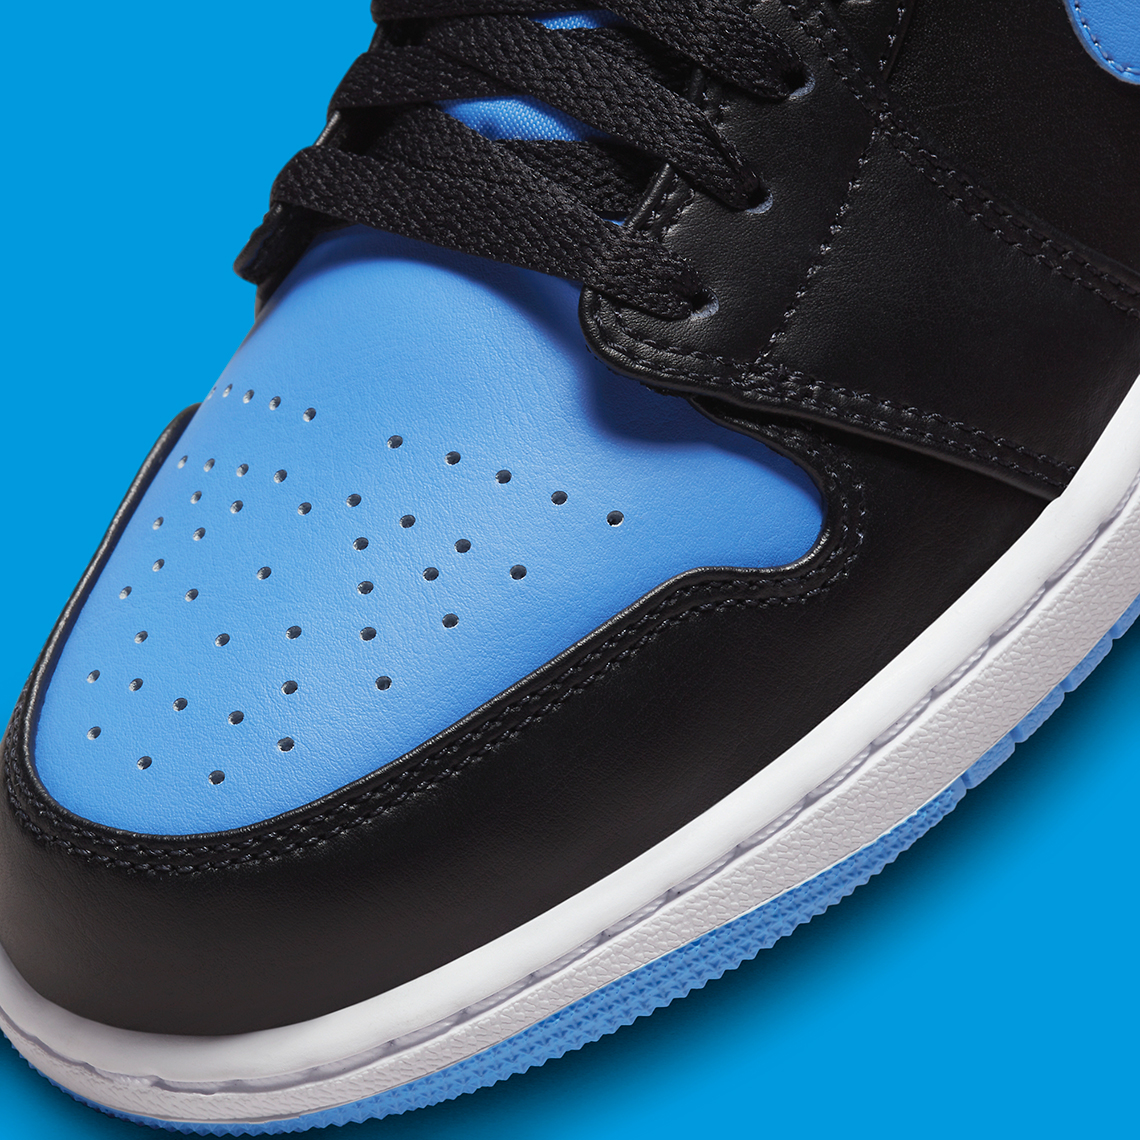 Air Jordan 1 Low Black University Blue 553558-041 | SneakerNews.com